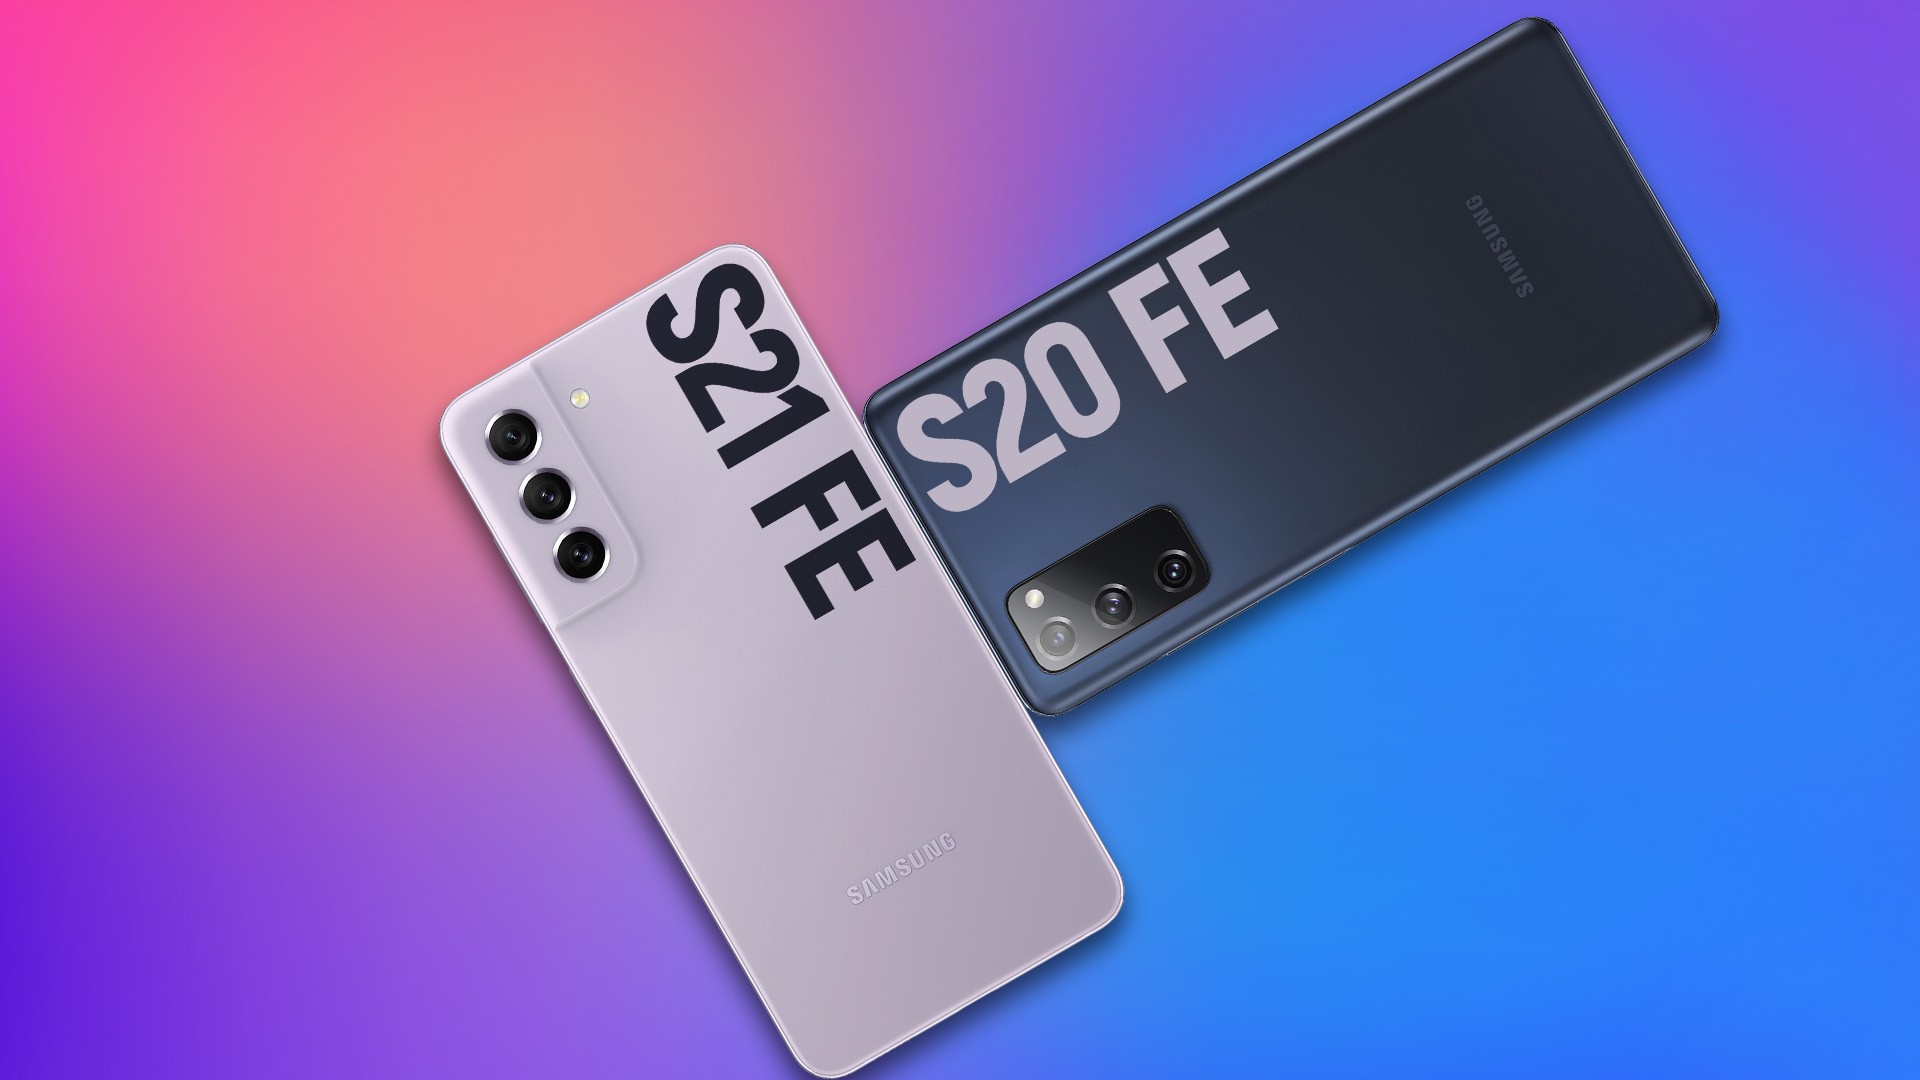 Smartphone Samsung Galaxy S20 FE SM-G780F 6GB RAM 128GB Câmera Tripla com o  Melhor Preço é no Zoom